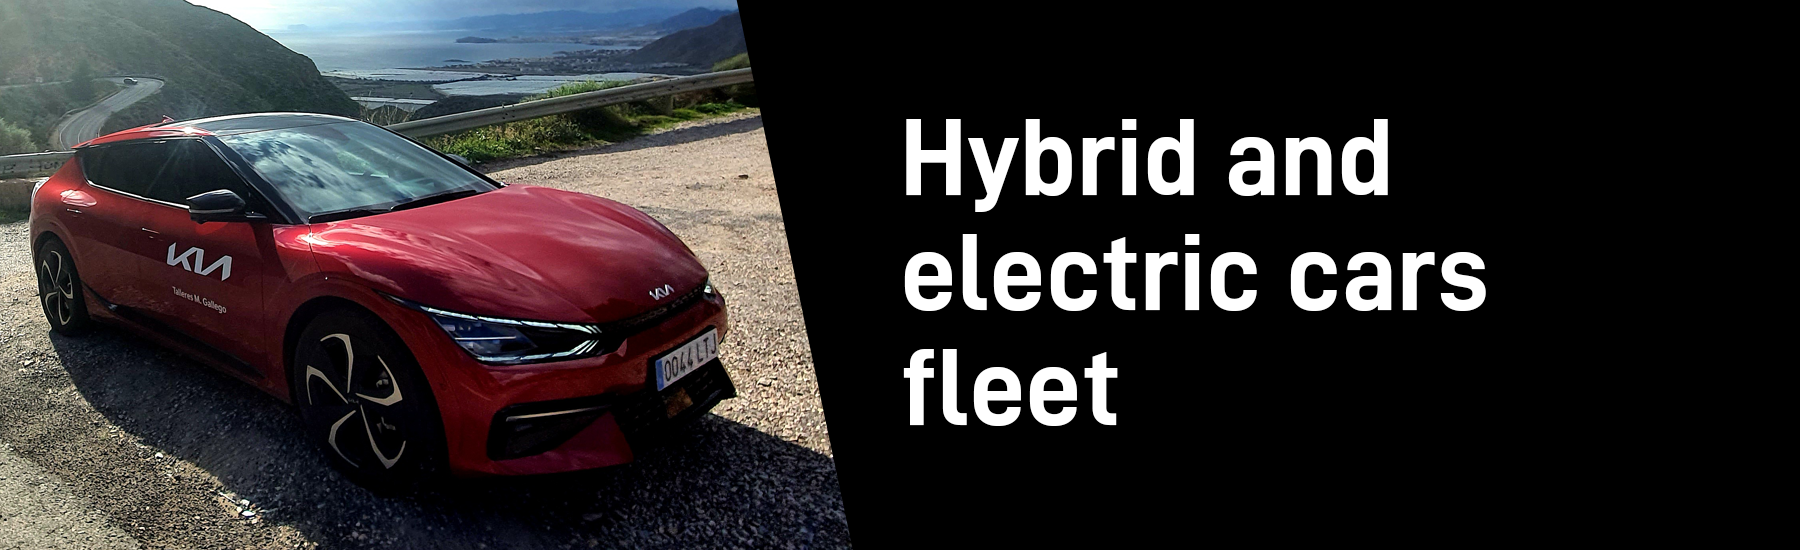 Flota de coches híbridos y eléctricos